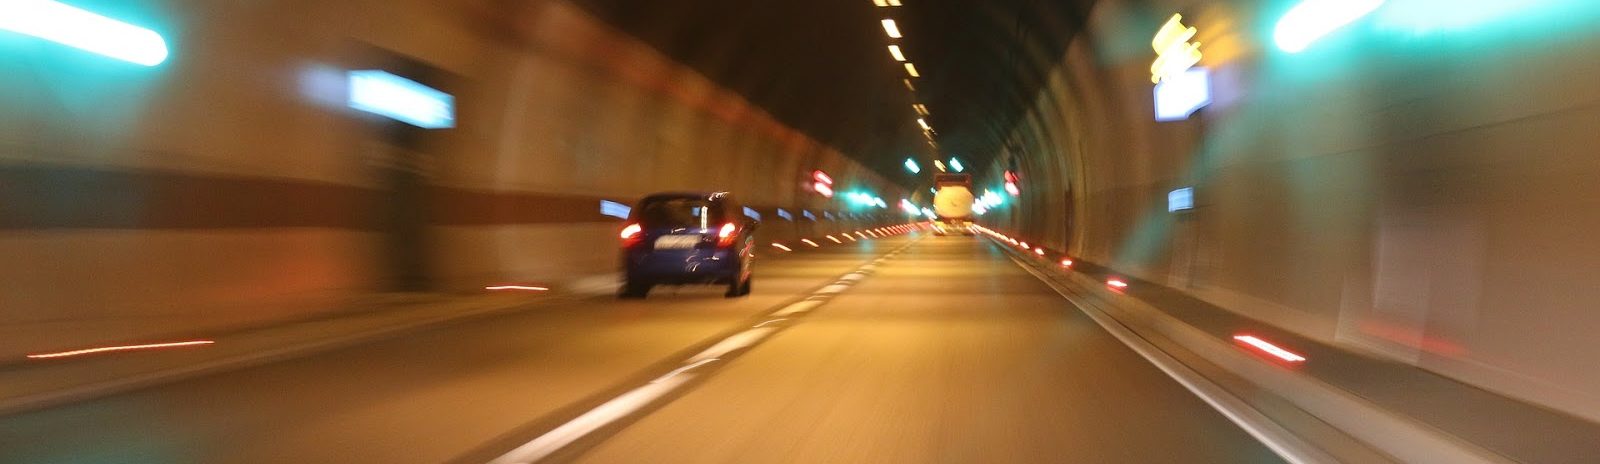 tunnel met auto